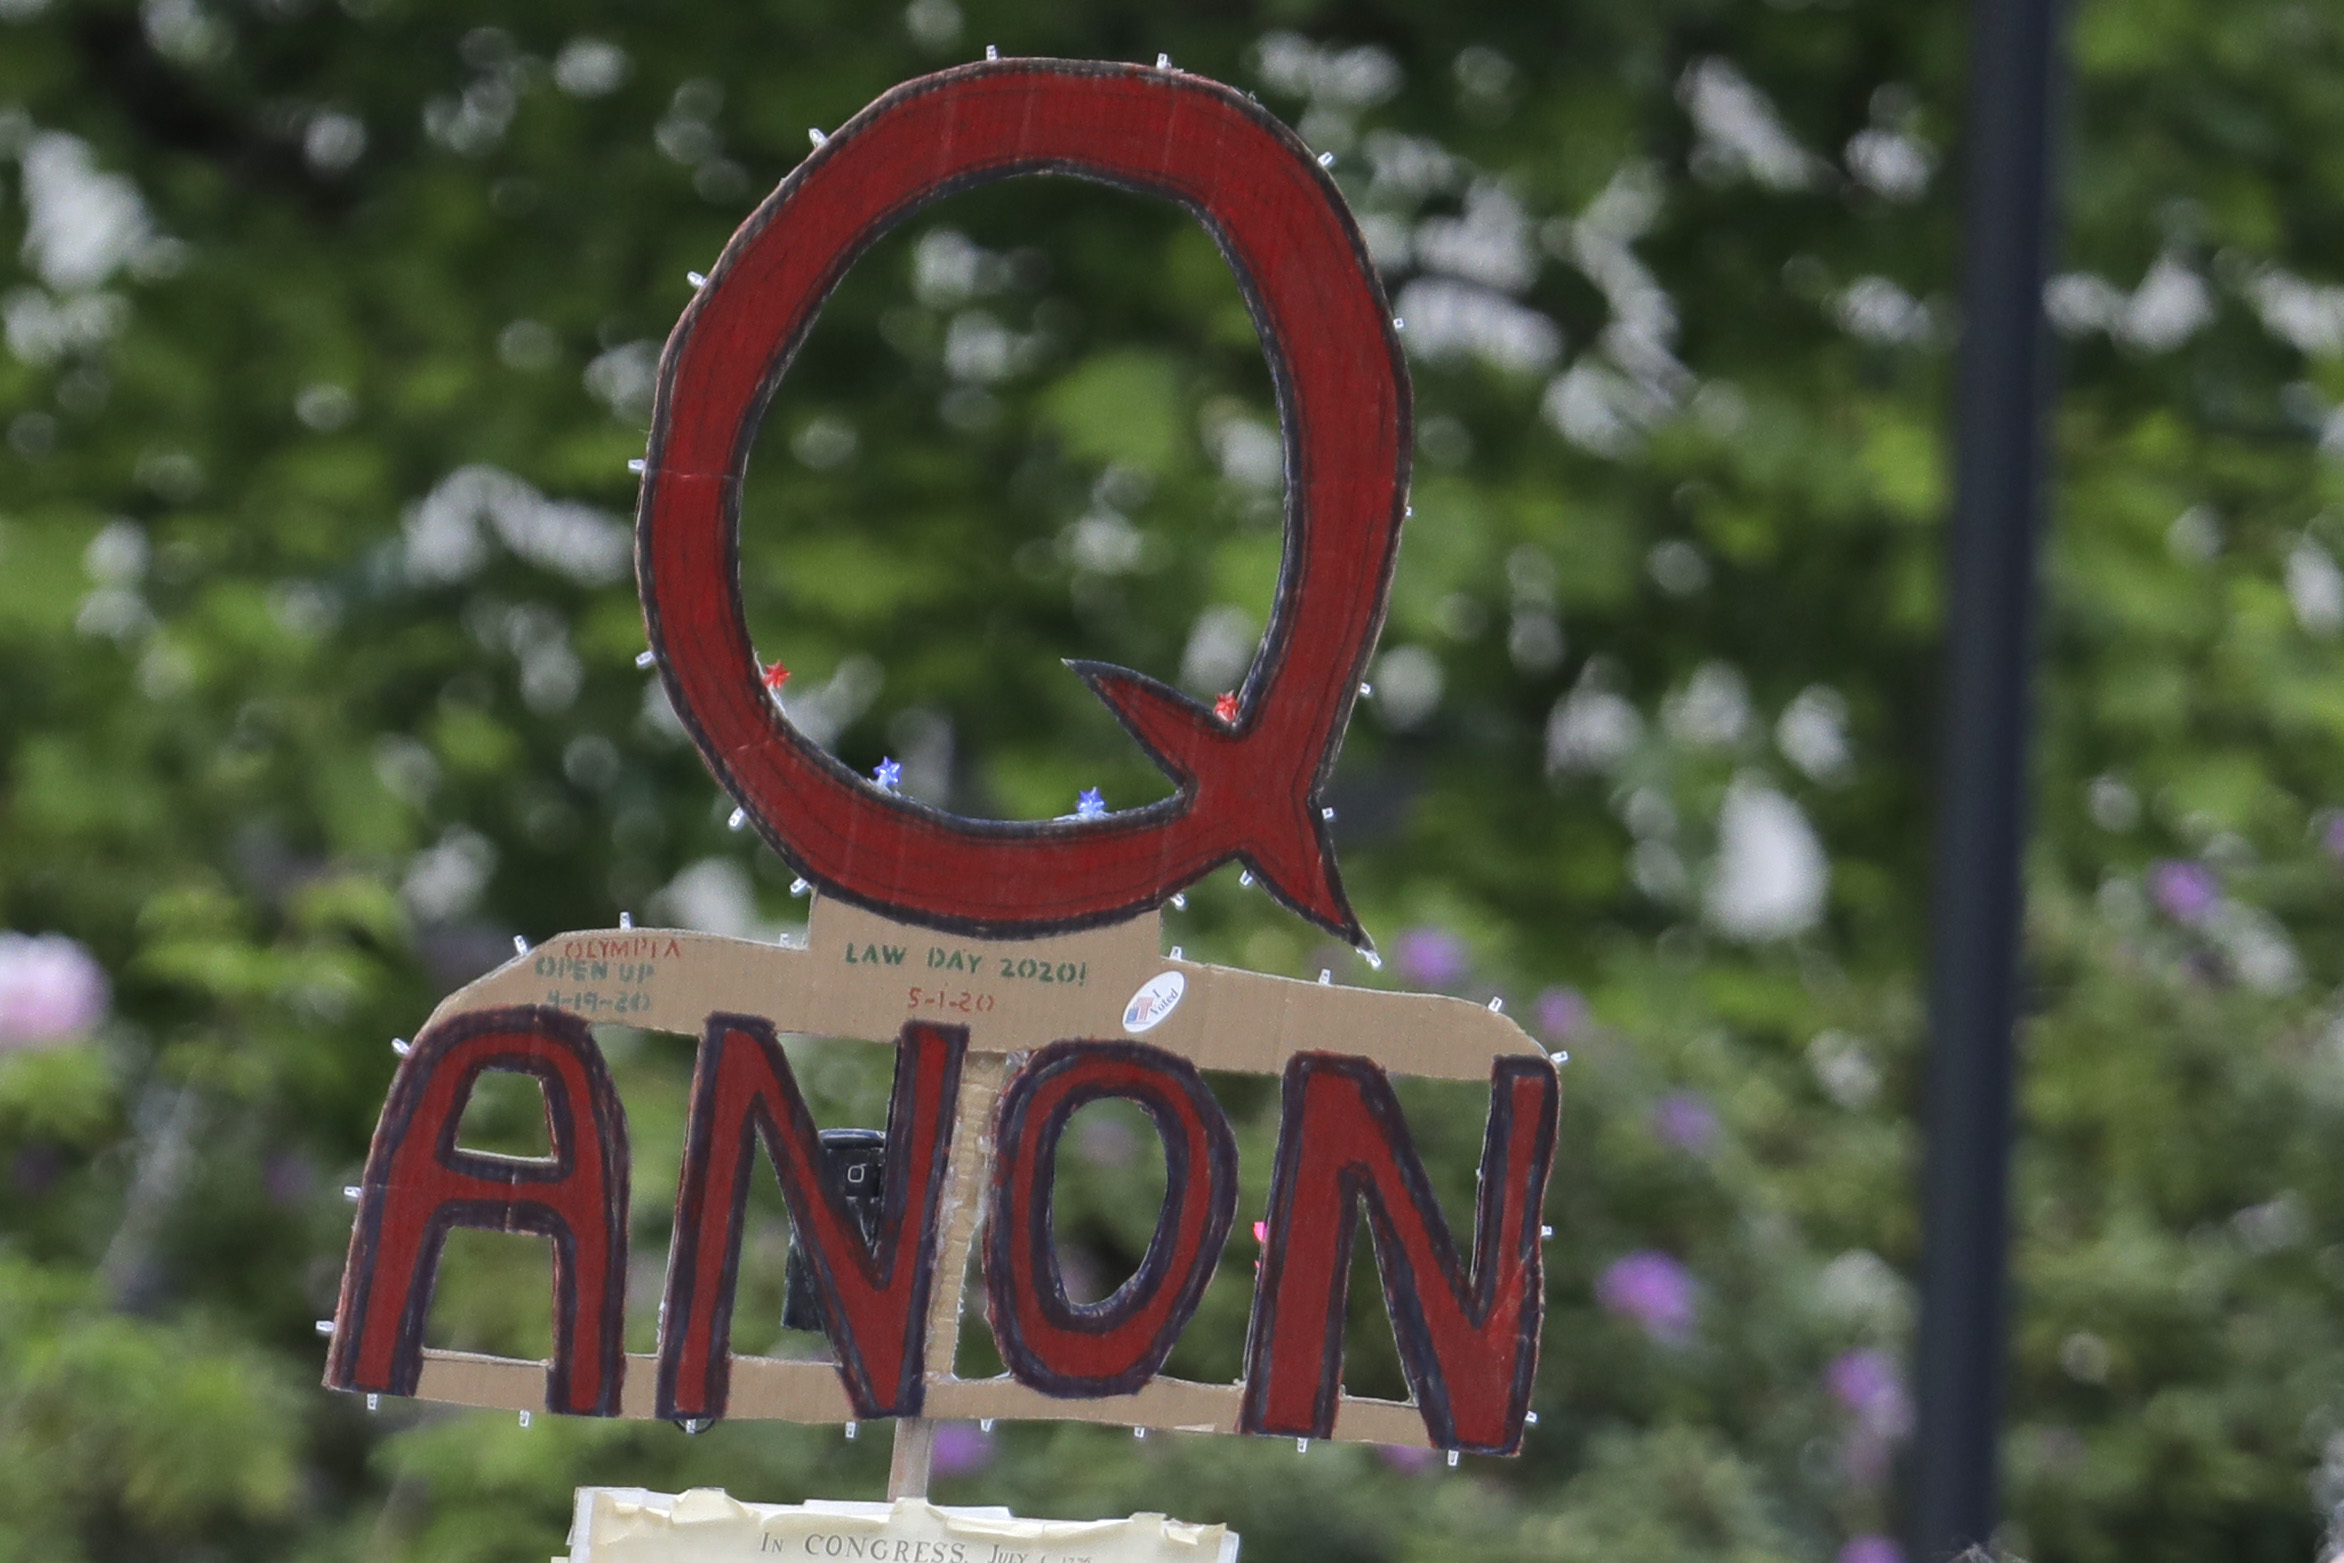 A QAnon sign at a rally